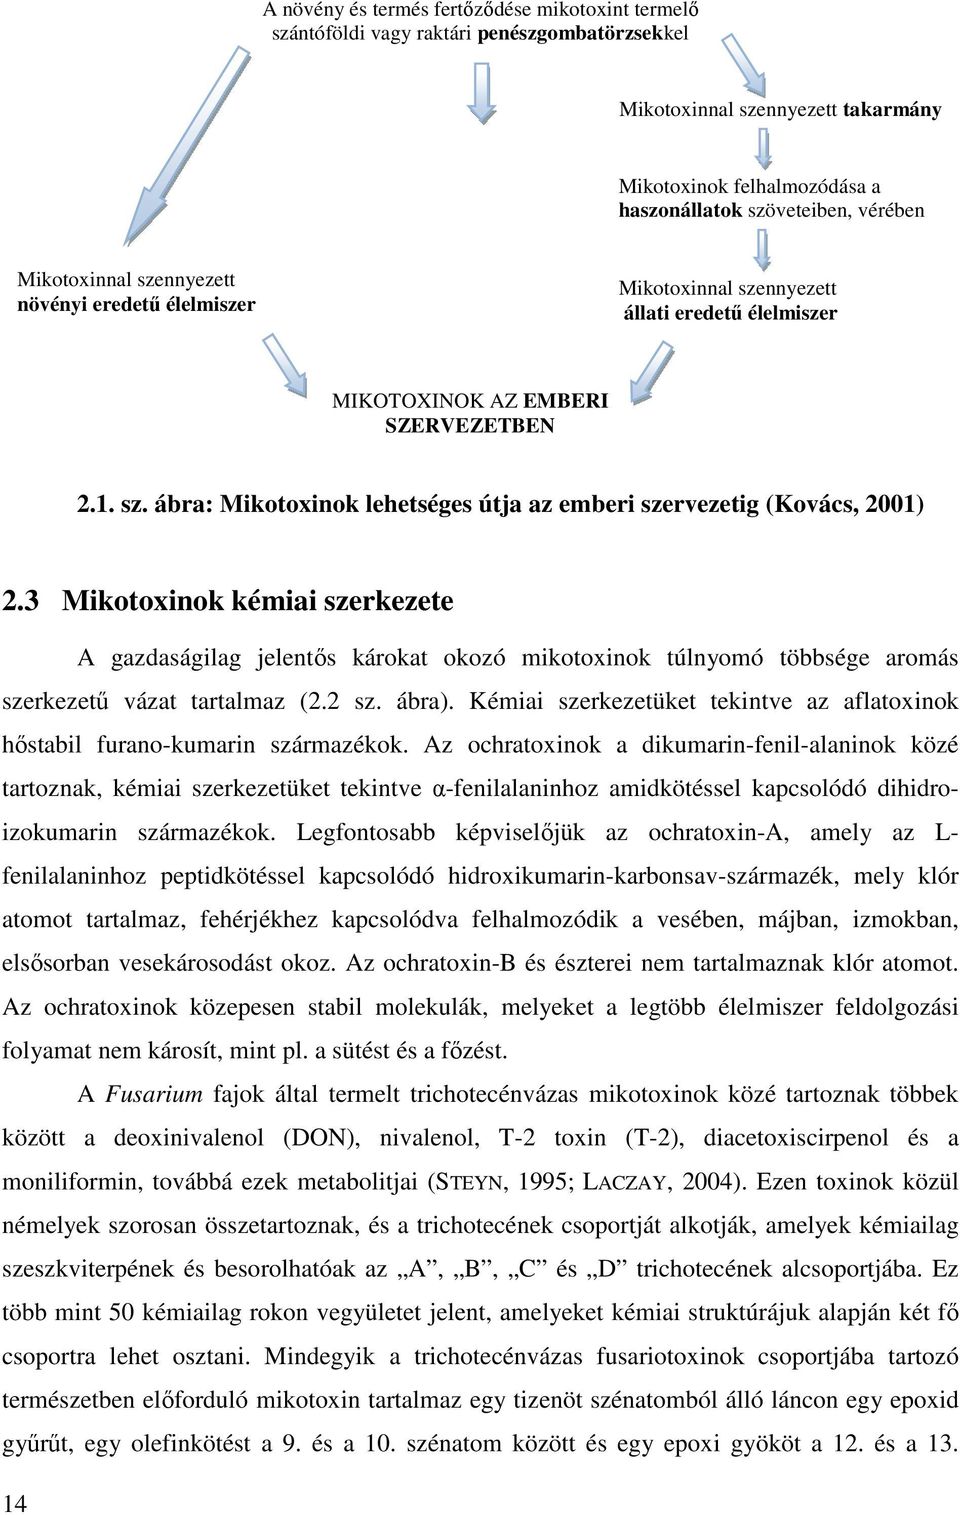 3 Mikotoxinok kémiai szerkezete A gazdaságilag jelentıs károkat okozó mikotoxinok túlnyomó többsége aromás szerkezető vázat tartalmaz (2.2 sz. ábra).